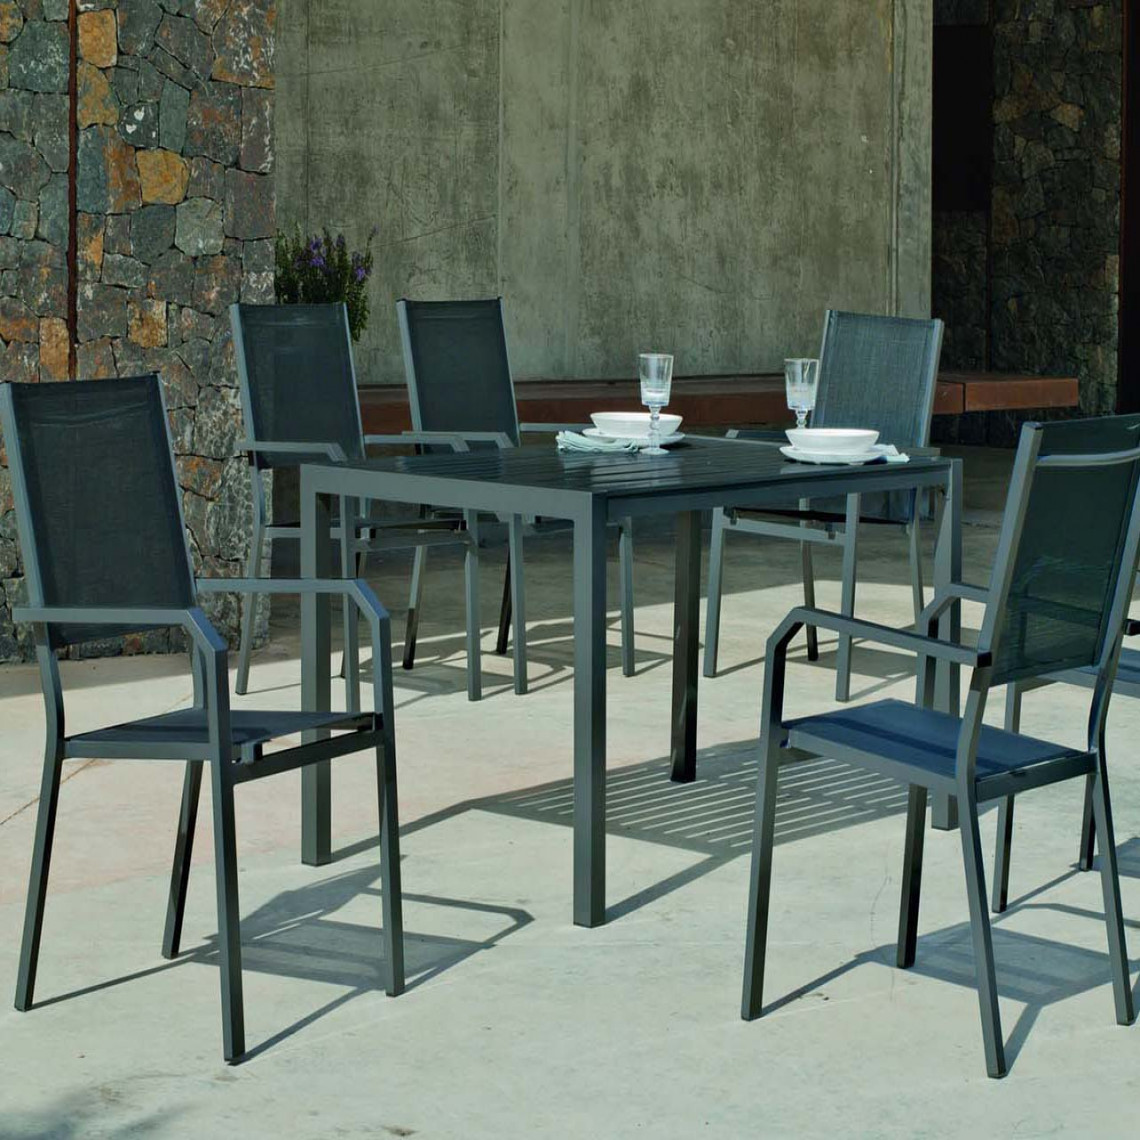 Hevea - Salon de jardin en aluminium 6 personnes Palma gema - Ensembles tables et chaises